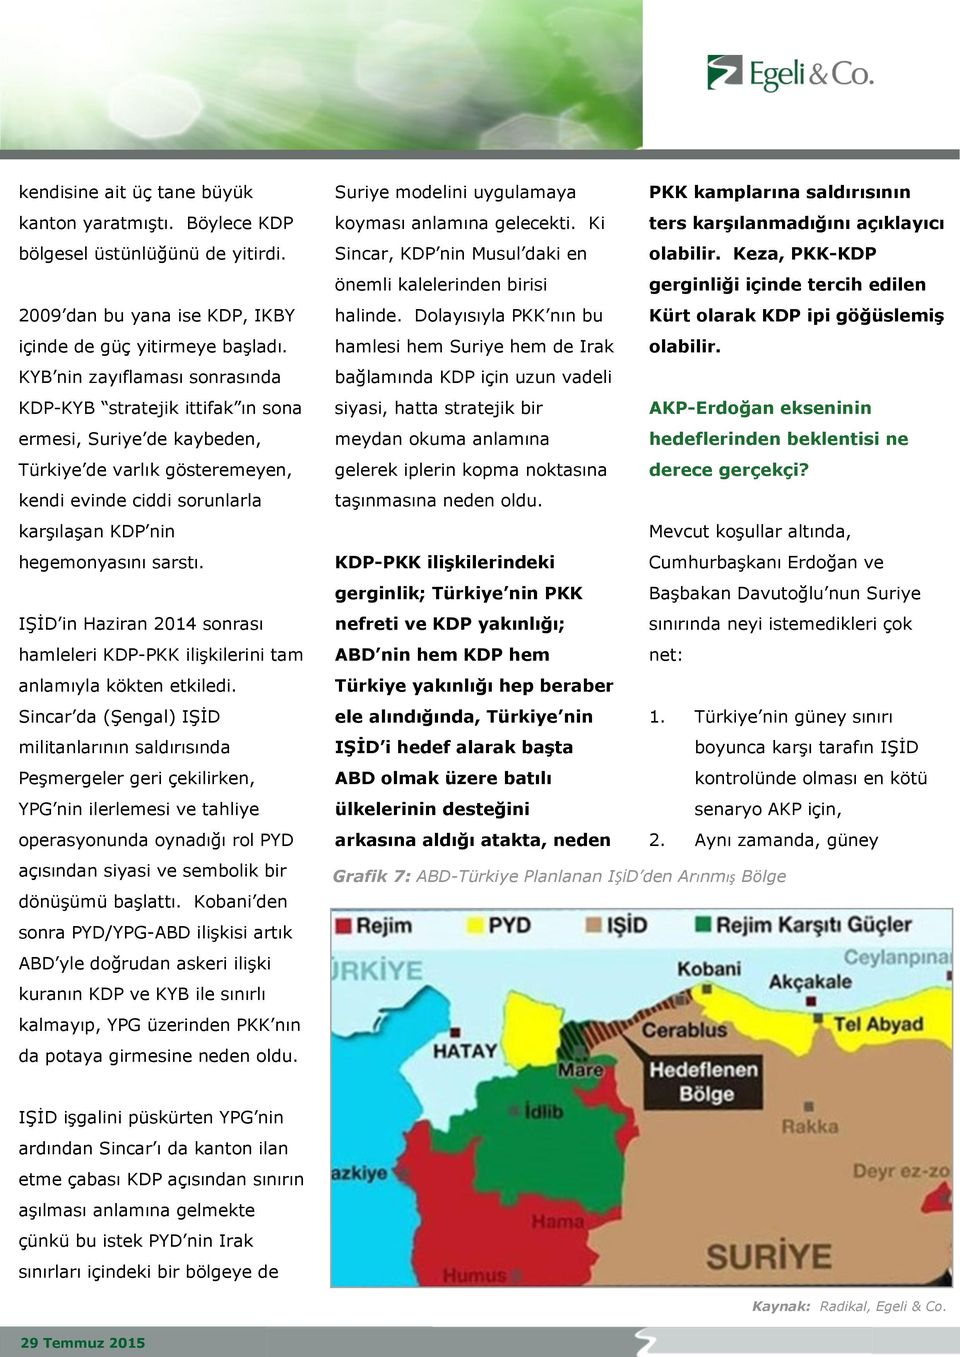 IŞİD in Haziran 2014 sonrası hamleleri KDP-PKK ilişkilerini tam anlamıyla kökten etkiledi.